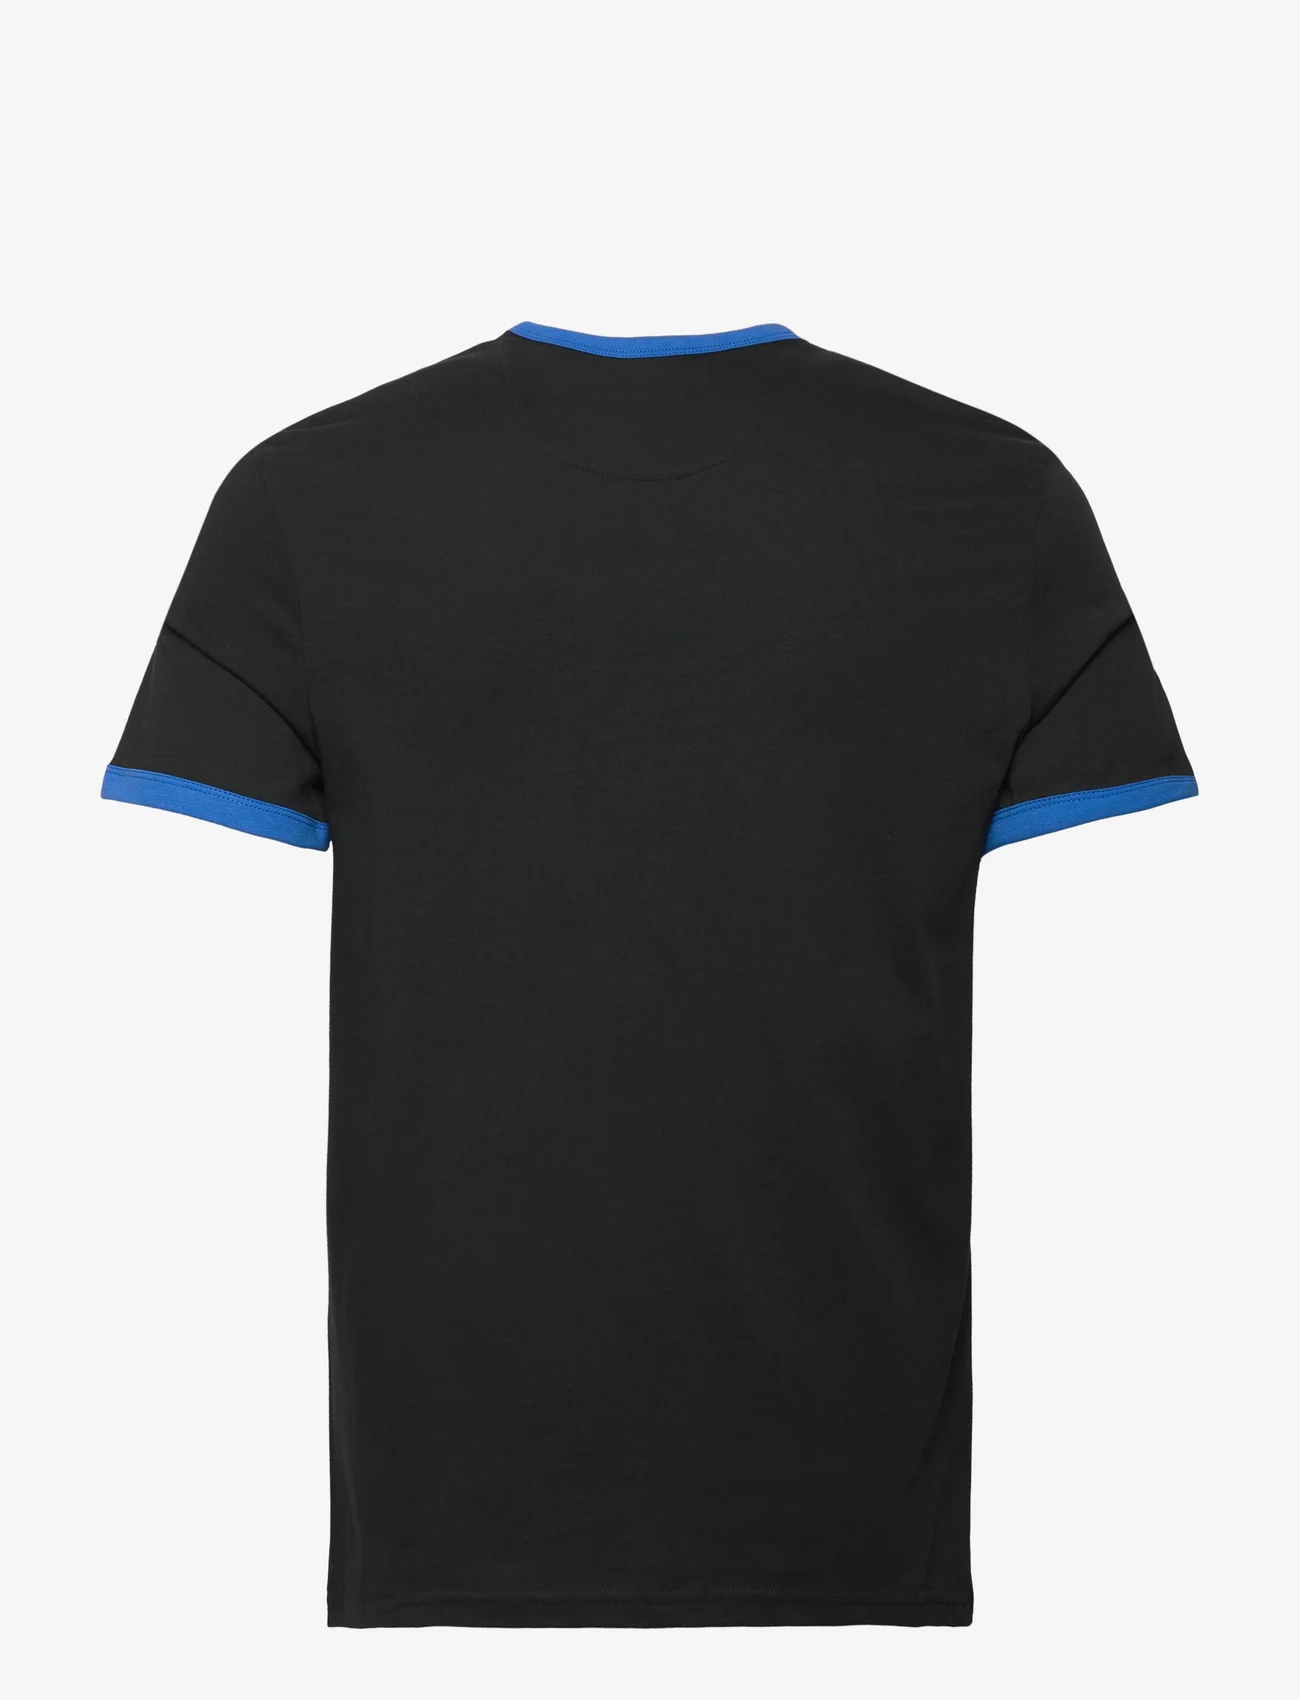 Lyle & Scott - Ringer T-Shirt - laveste priser - jet black/ bright blue - 1